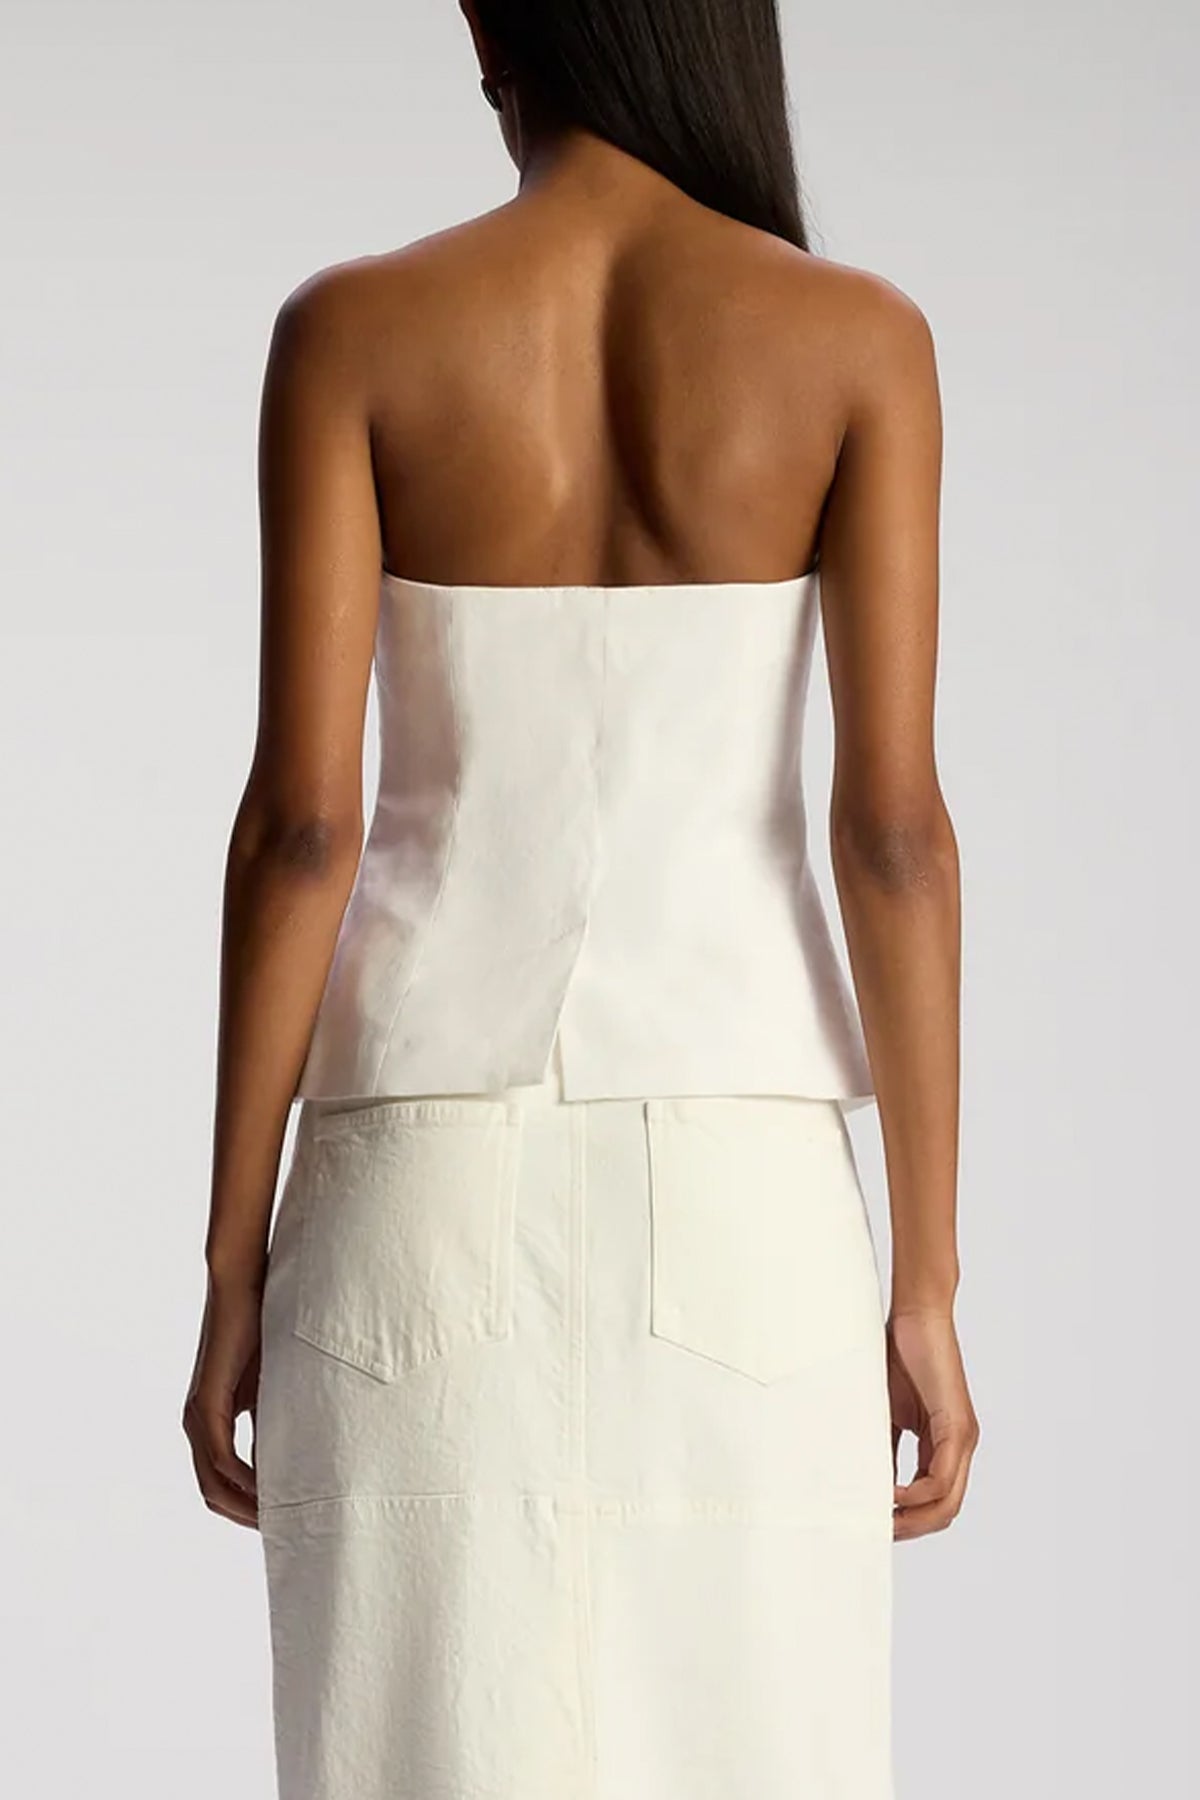 Renee Strapless Stretch Linen Top in Ecru - shop - olivia.com